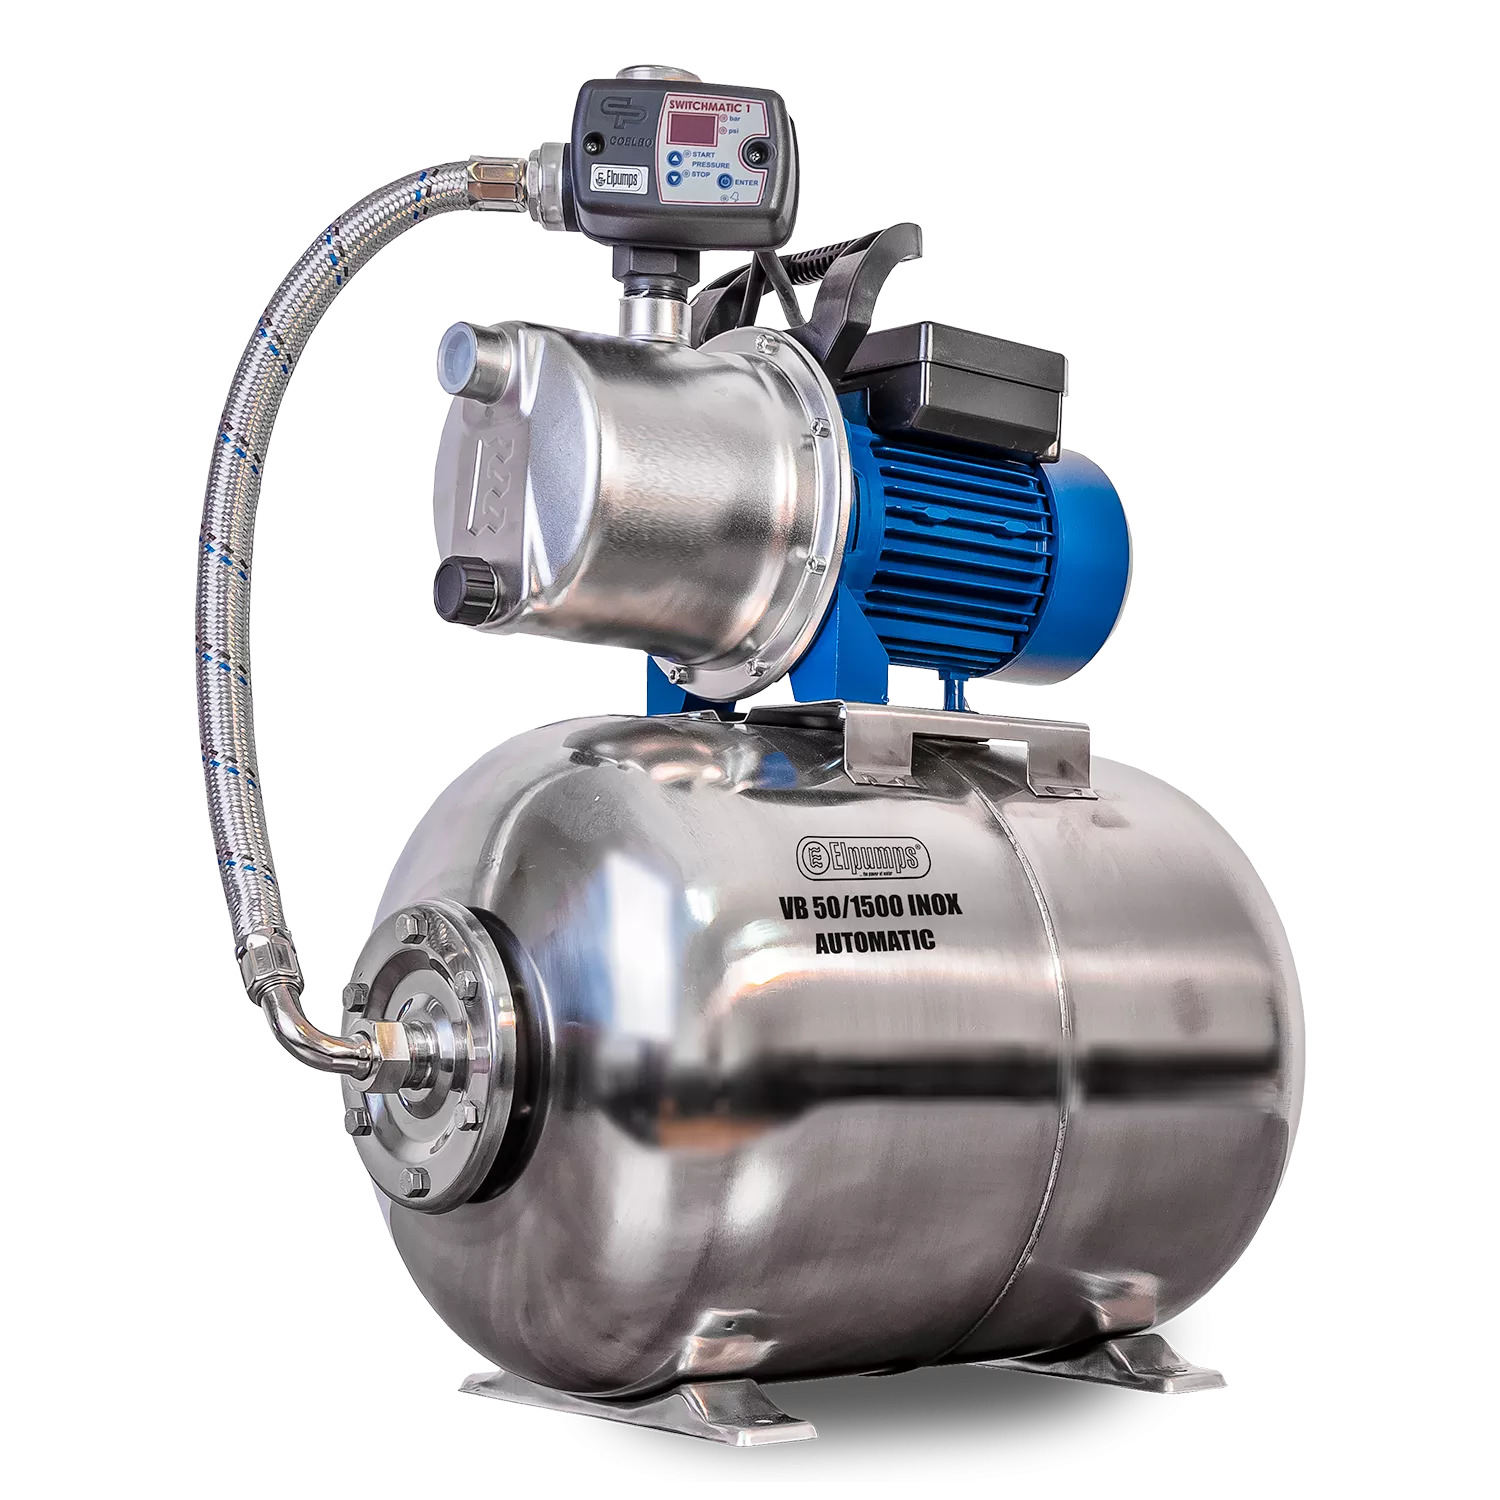 VB 50/1500 INOX Automatic Installation d'eau domestique, avec roue, corps de pompe et réservoir de pression INOX, 1500 W, 6.300 l/h, 4,8 bar, 50 L